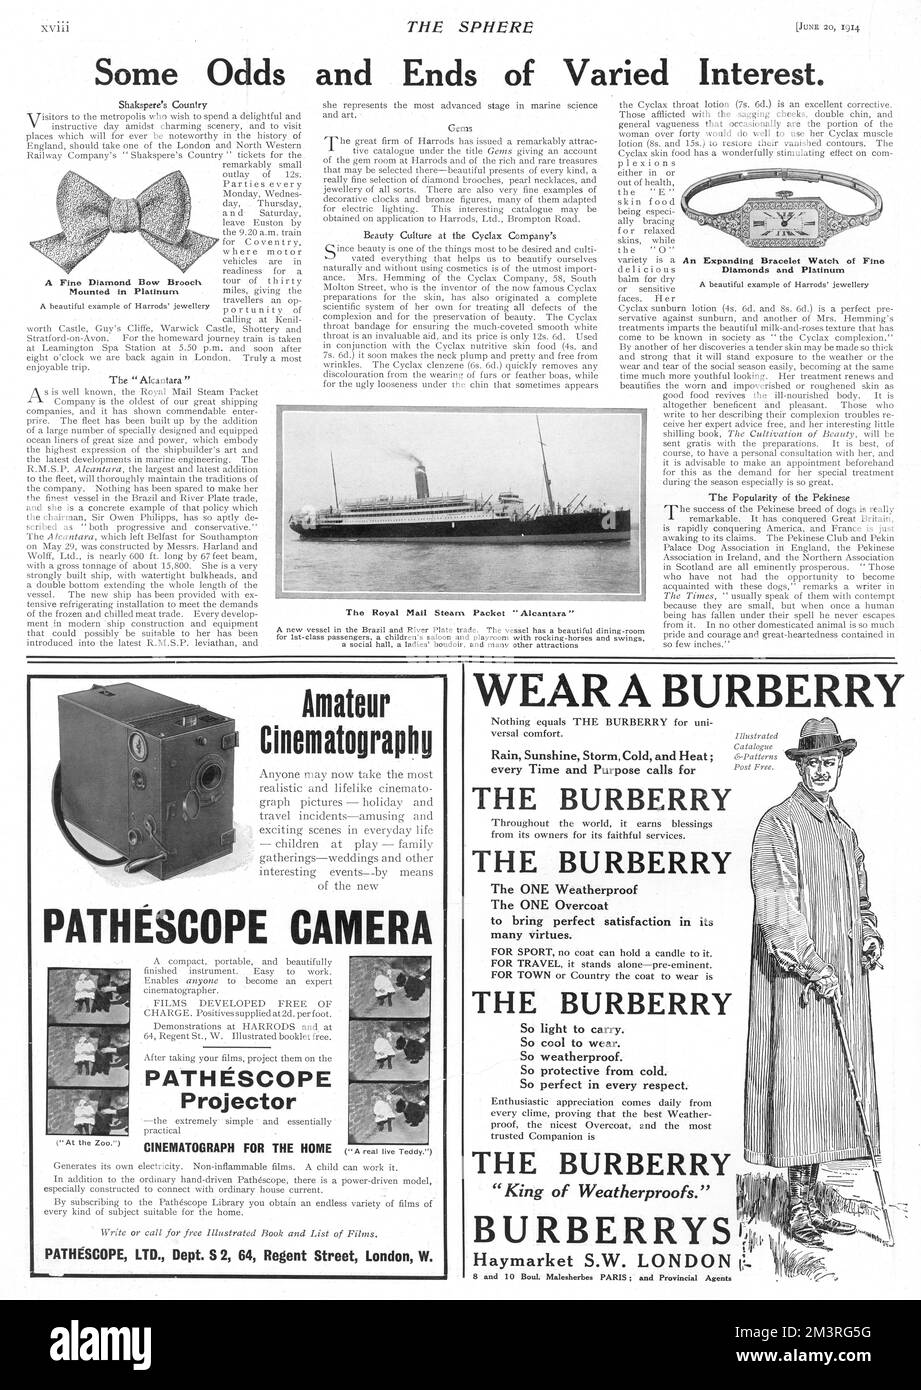 Einige Quoten und Angebote von unterschiedlichem Interesse, darunter das Royal Mail Steam-Paket Alcantara, ein Werbespot für die Pathescope-Kamera für Amateurkinematographie und ein Burberry-Werbespot. Kurz vor Beginn des Ersten Weltkriegs. 1914 Stockfoto